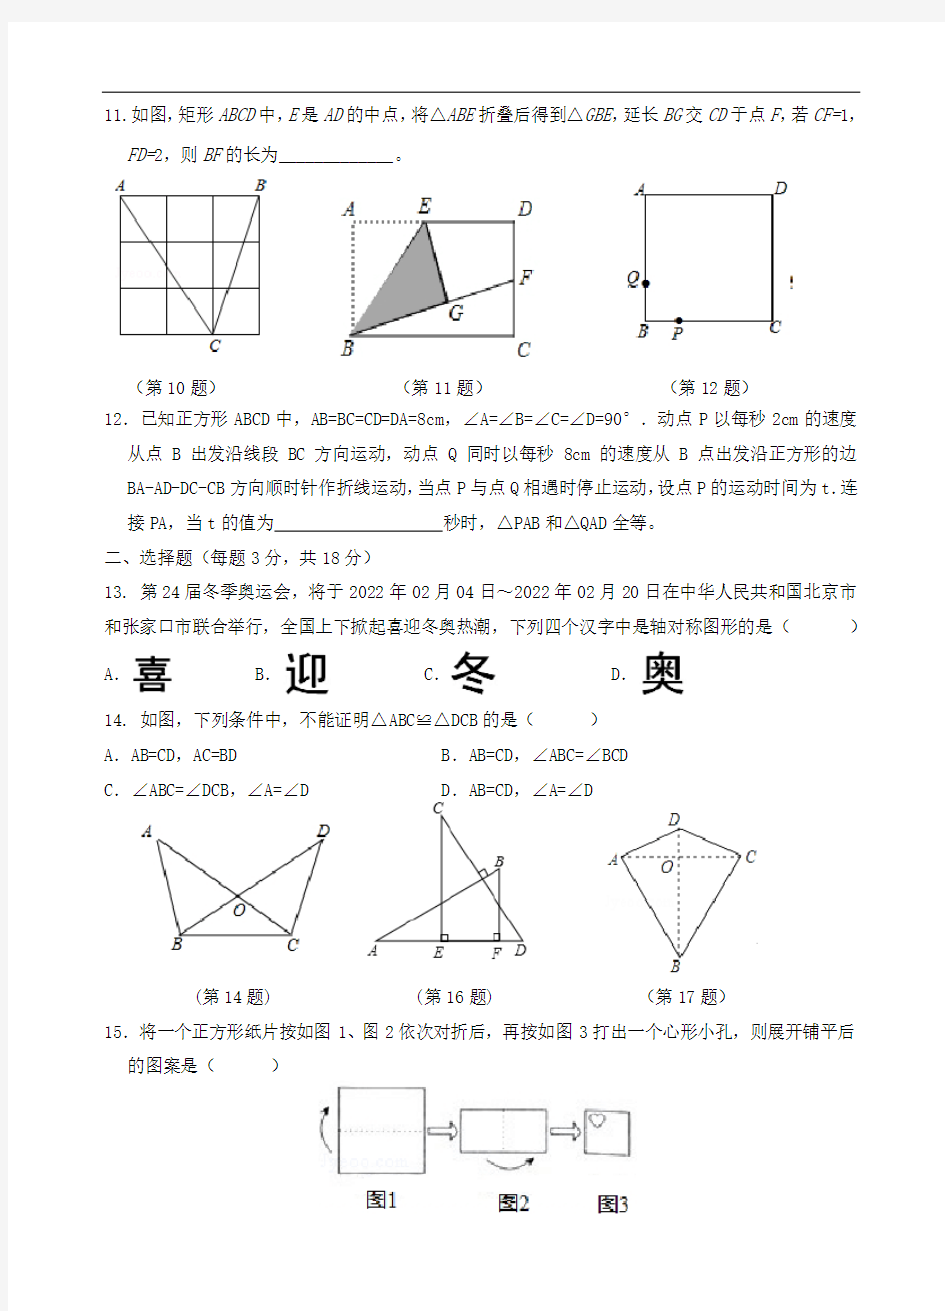 江苏省镇江实验学校2019-2020学年八年级上册数学第一次阶段调研试卷(无答案)